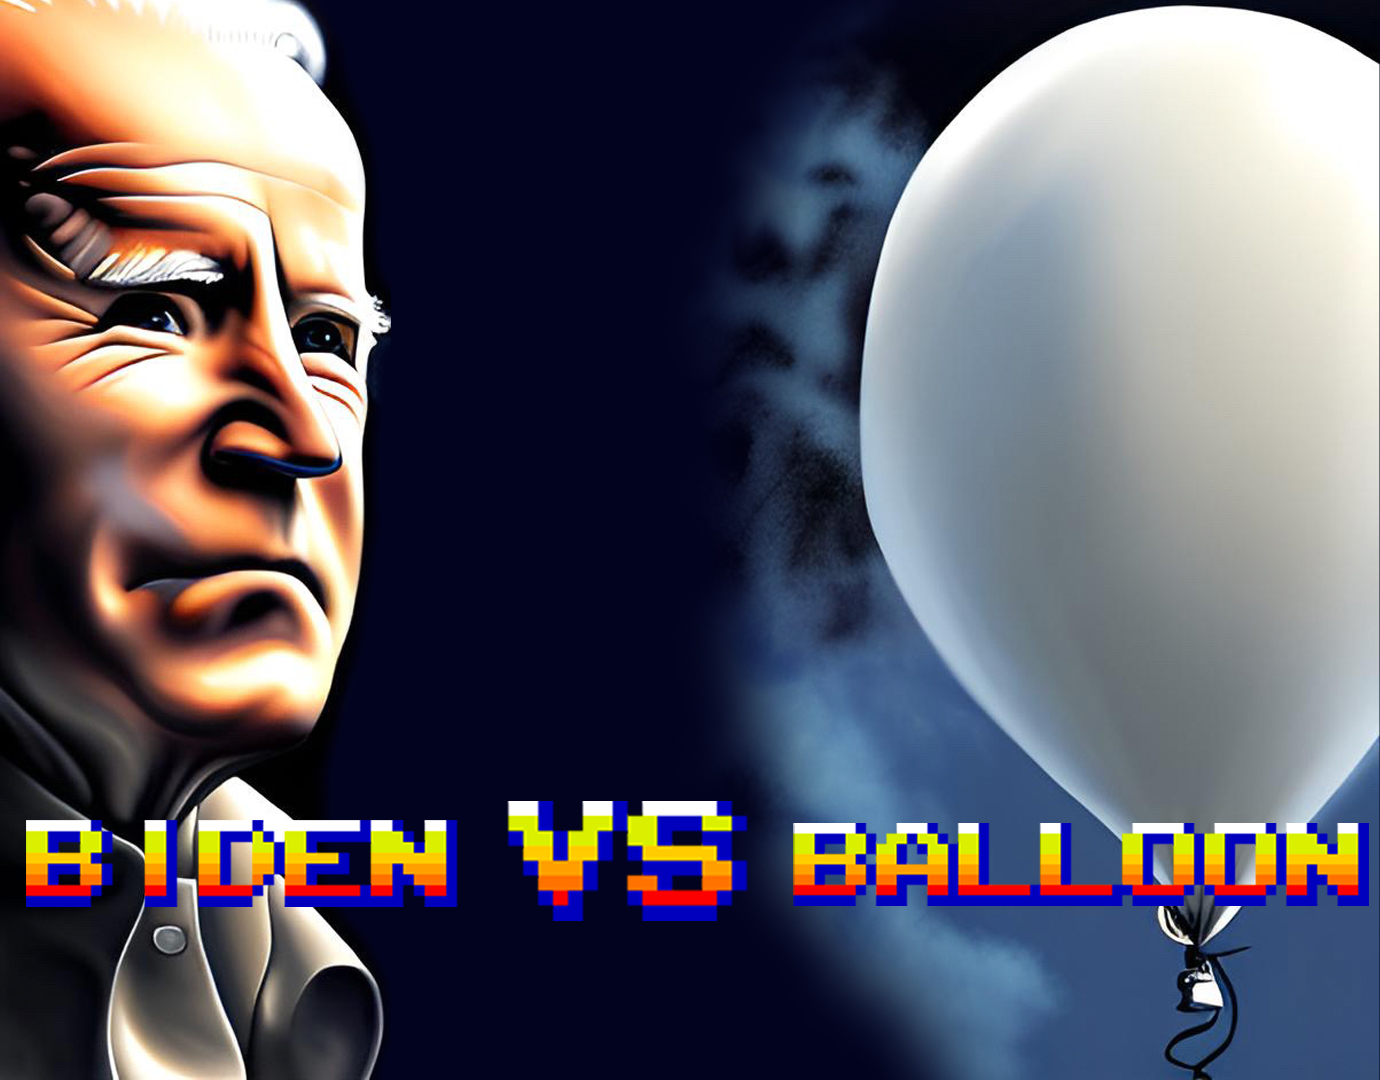 Biden Vs Balloon NFT